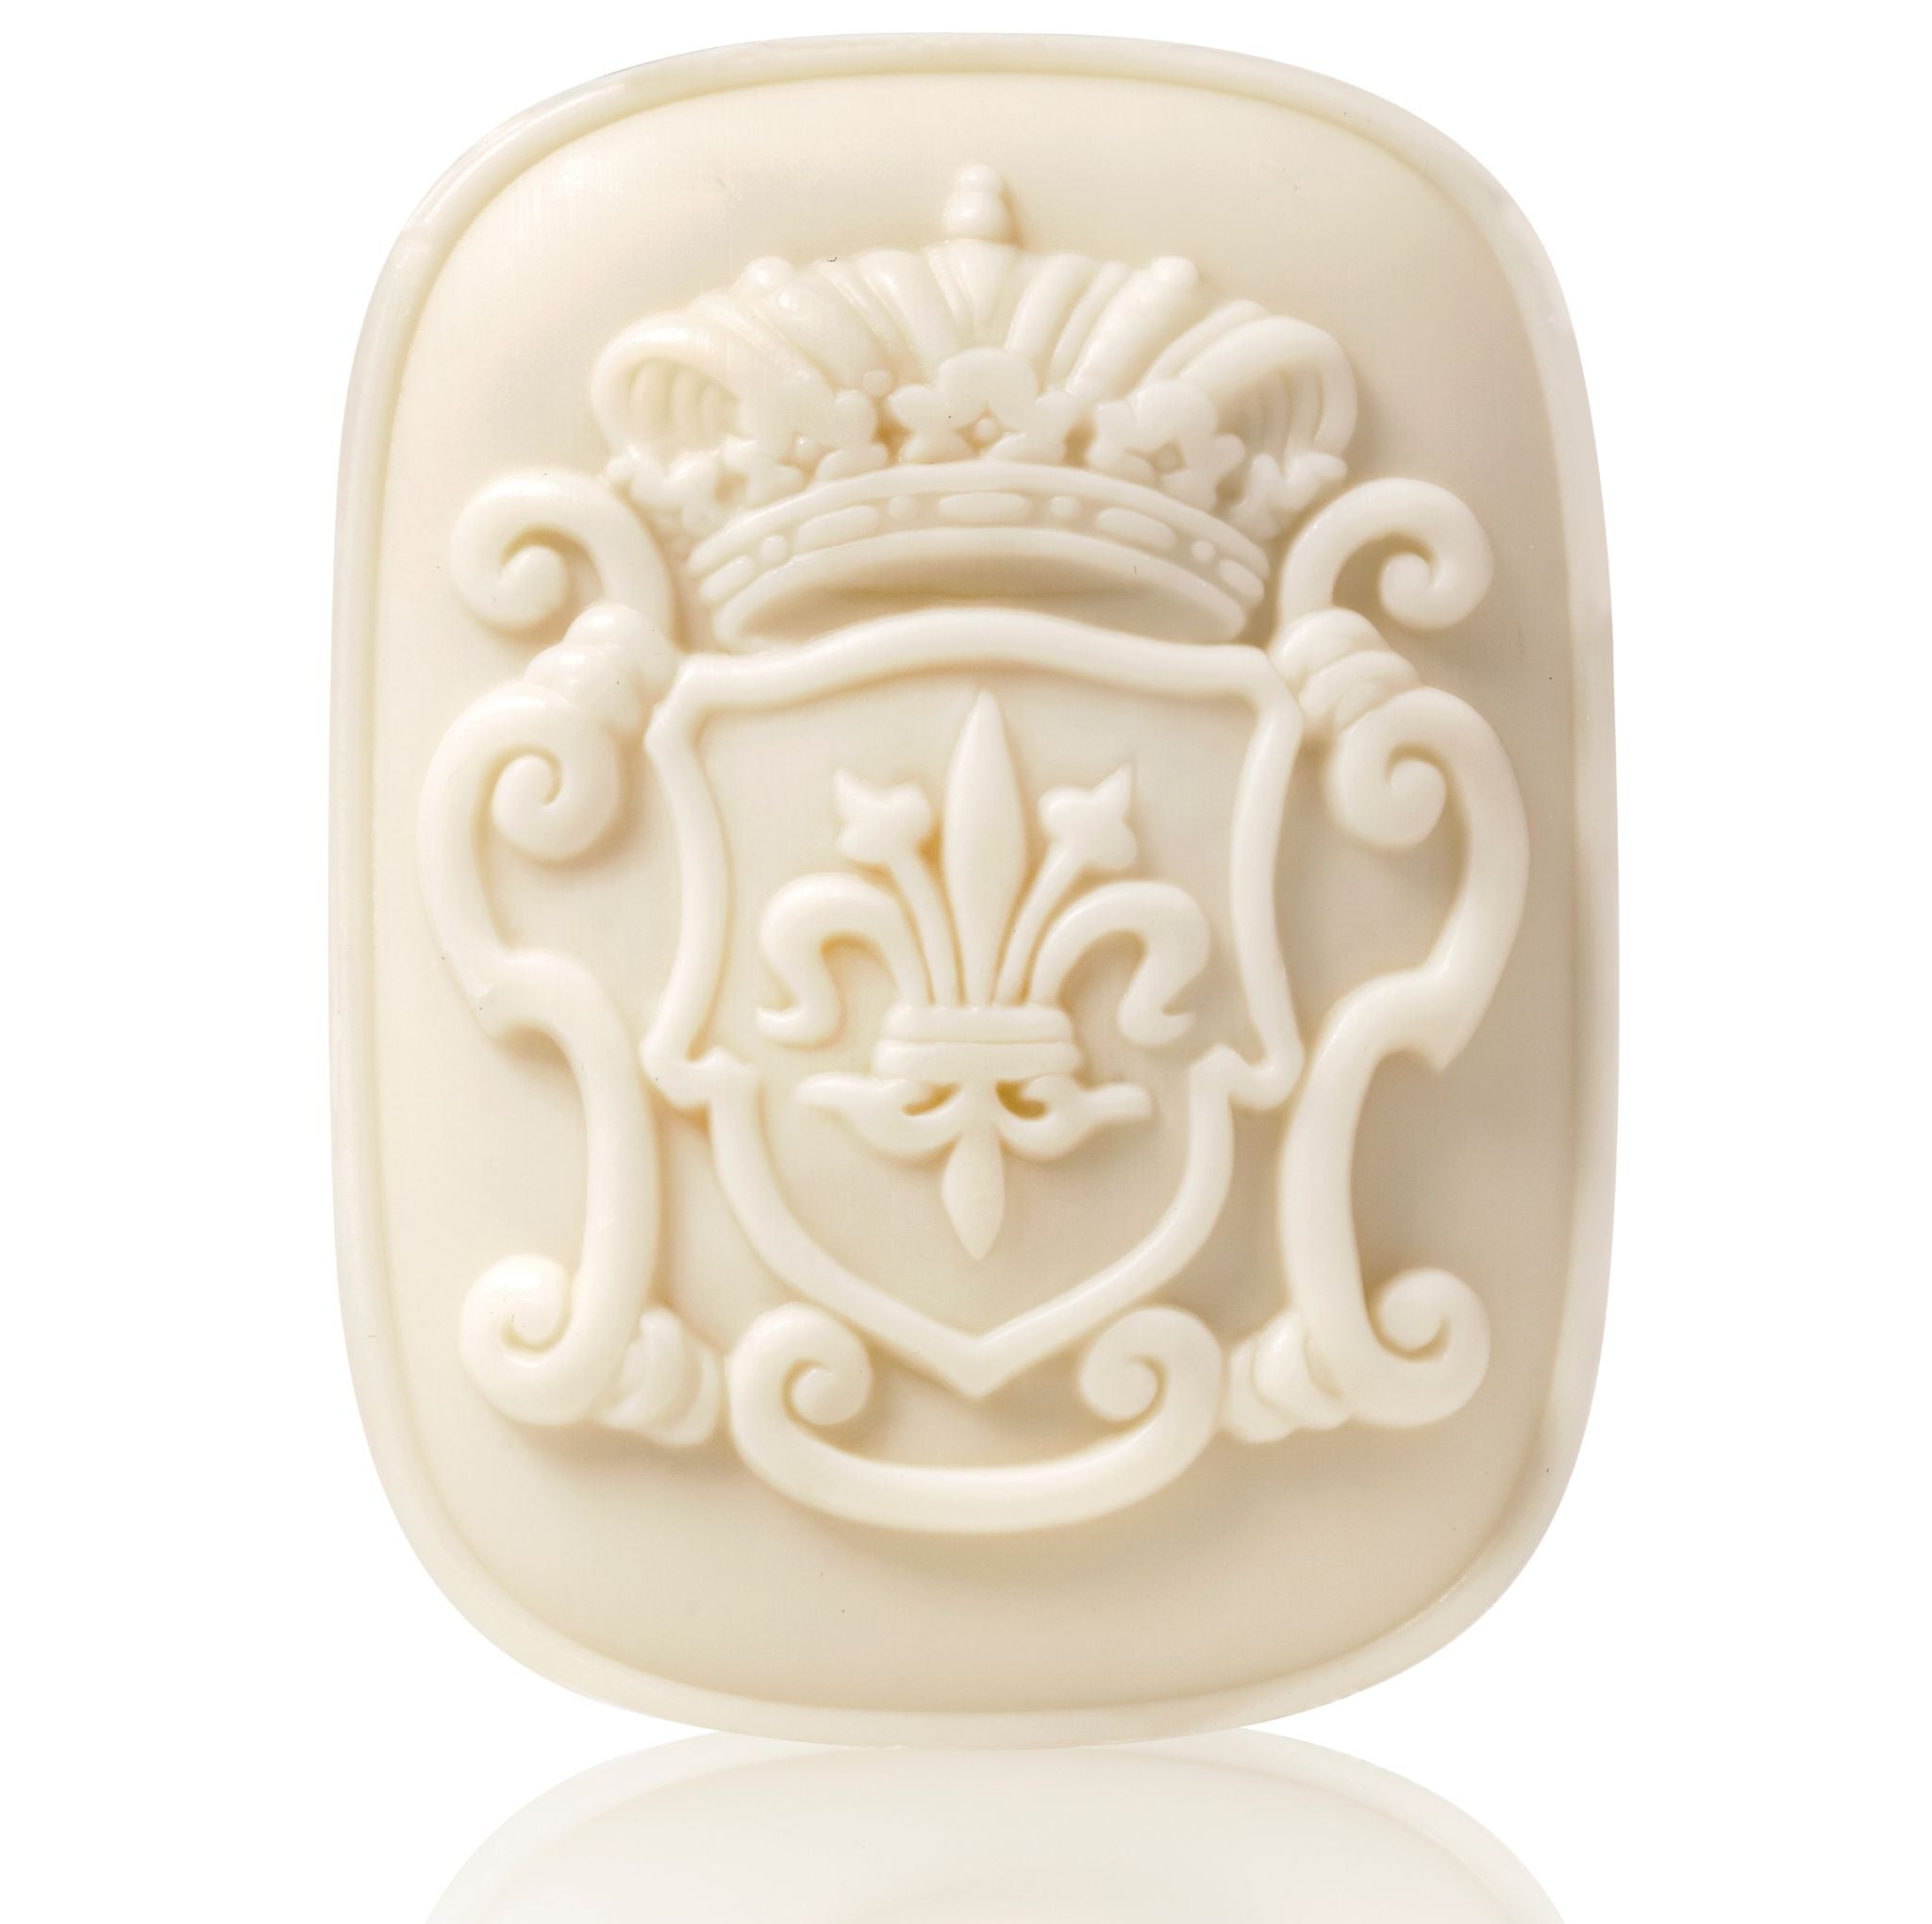 Saponificio Artigianale Fiorentino Vetiver & Argan Luxury Gift Box Soap 3x125g